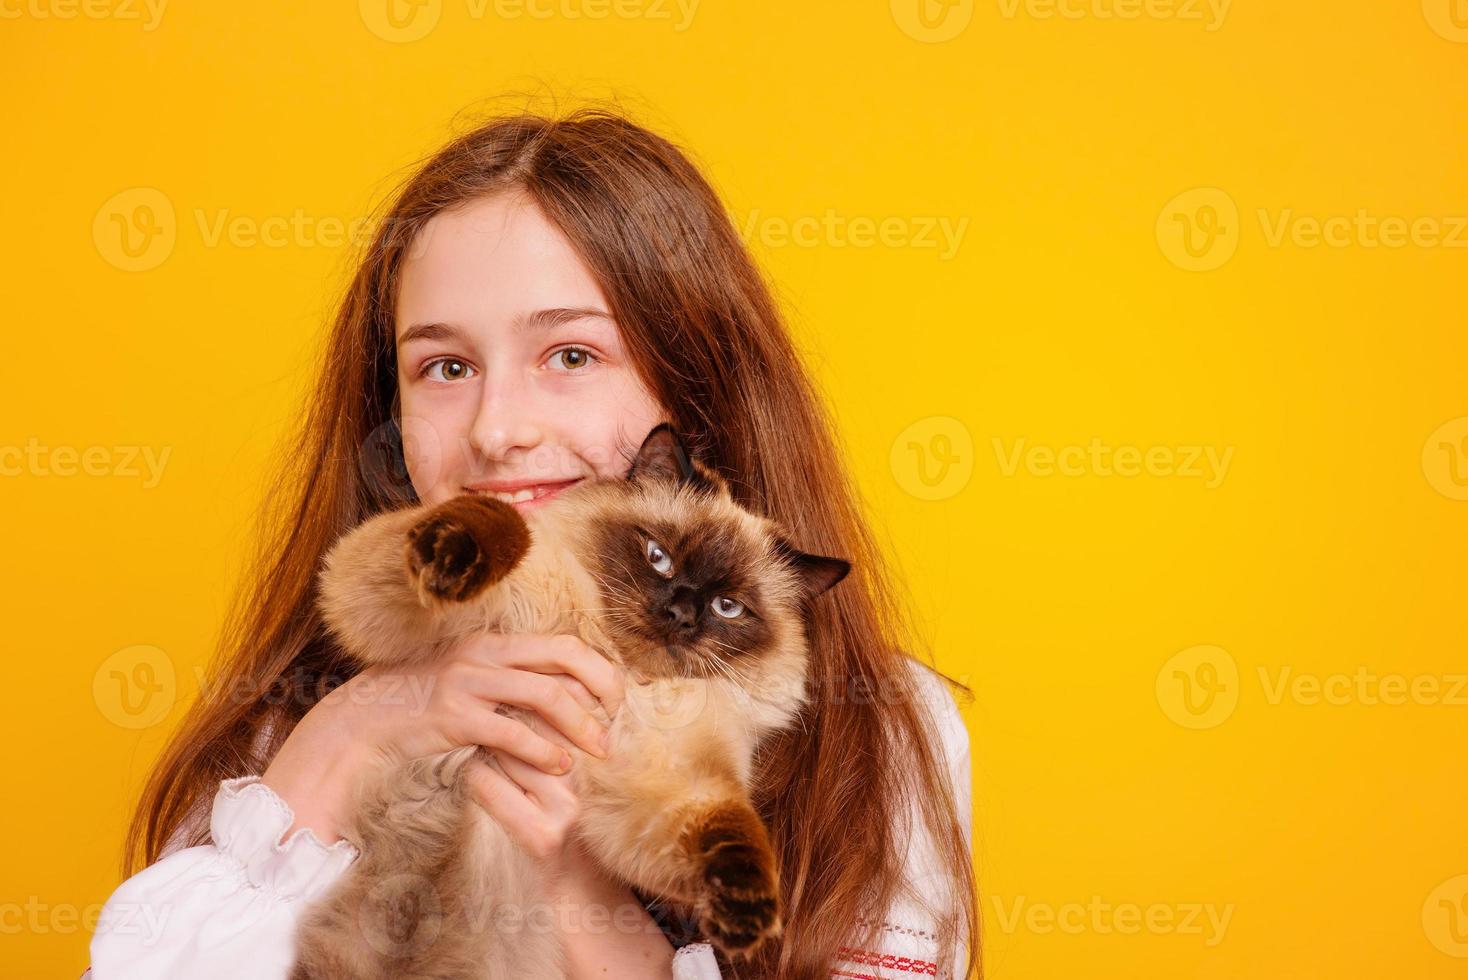 adolescente avec un chat dans ses bras. fille sur fond jaune. photo